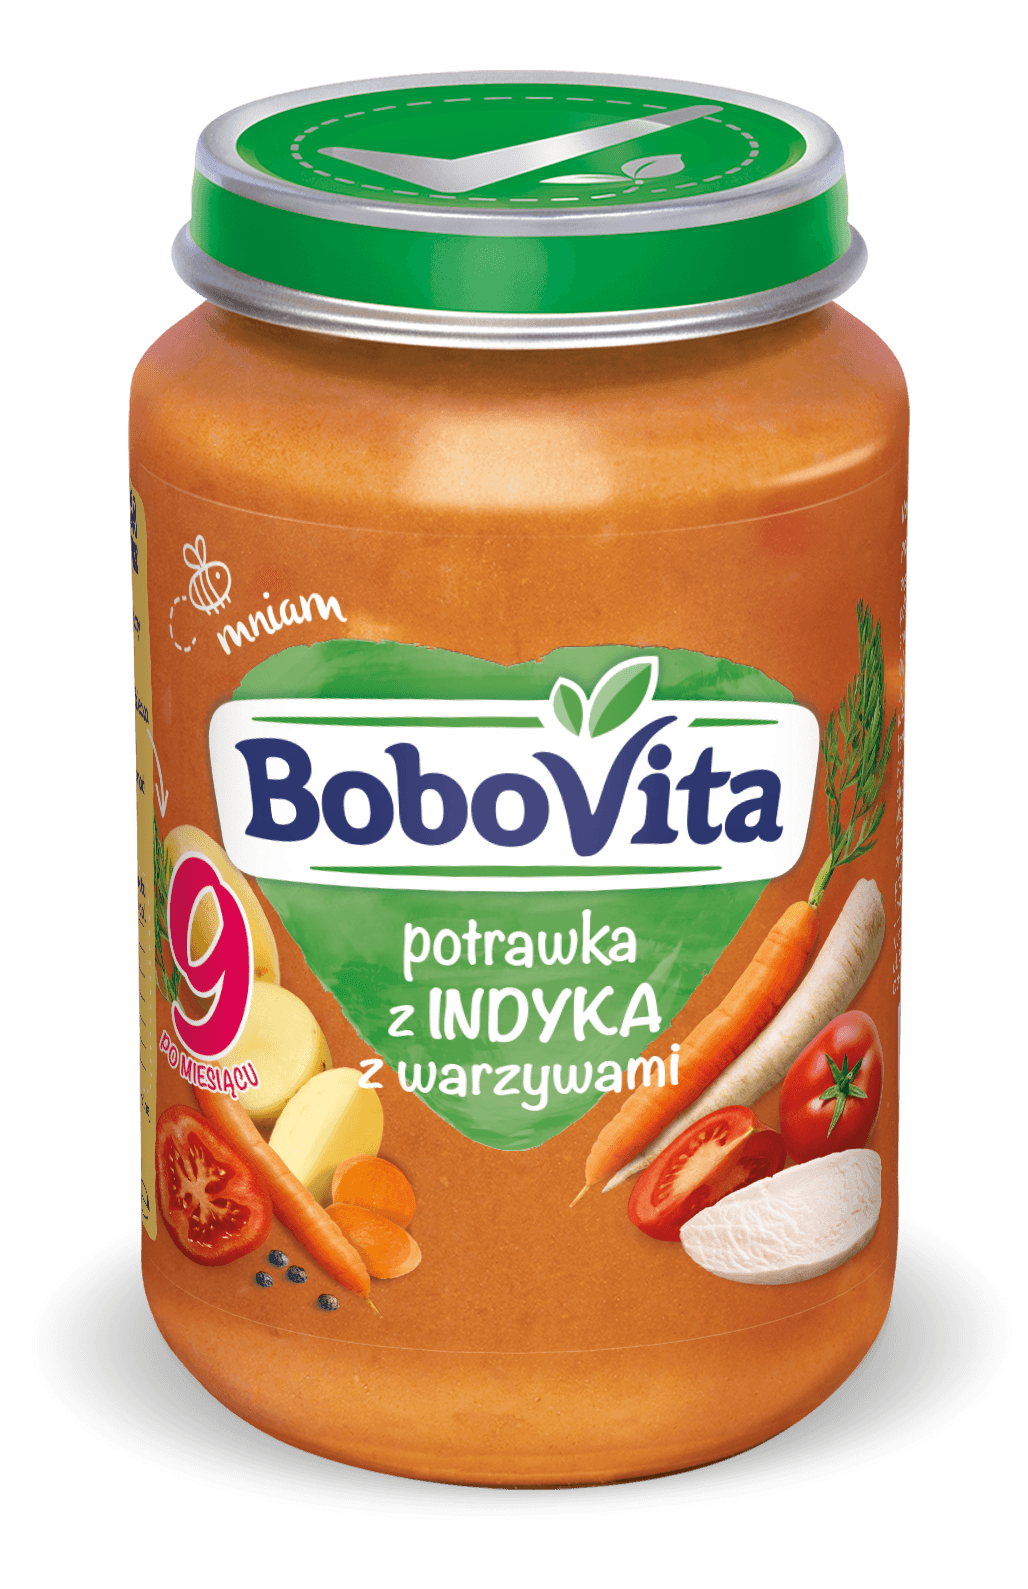 BBV Potrawka z indyka z warzywami 190g.png